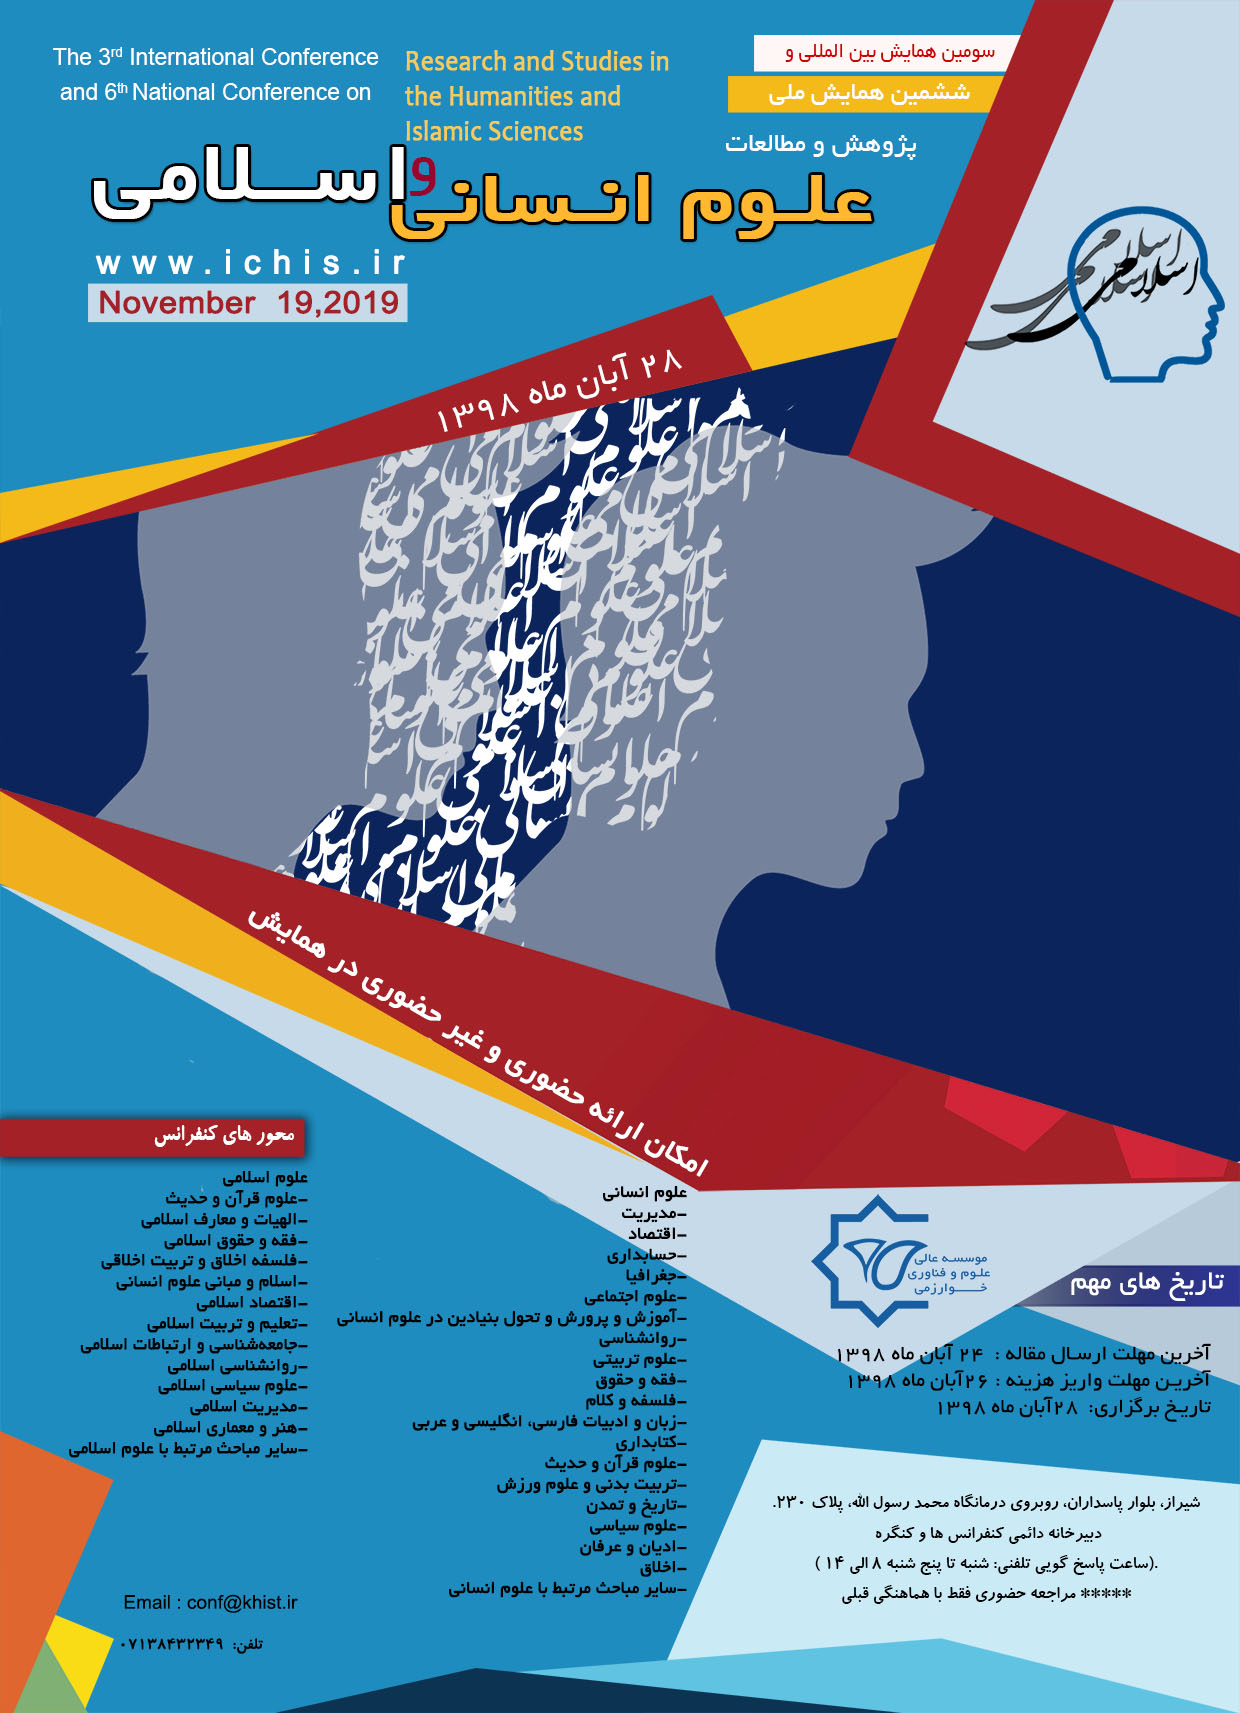 پوستر سومین همایش بین المللی و ششمین همایش ملی  پژوهش و مطالعات علوم انسانی و اسلامی